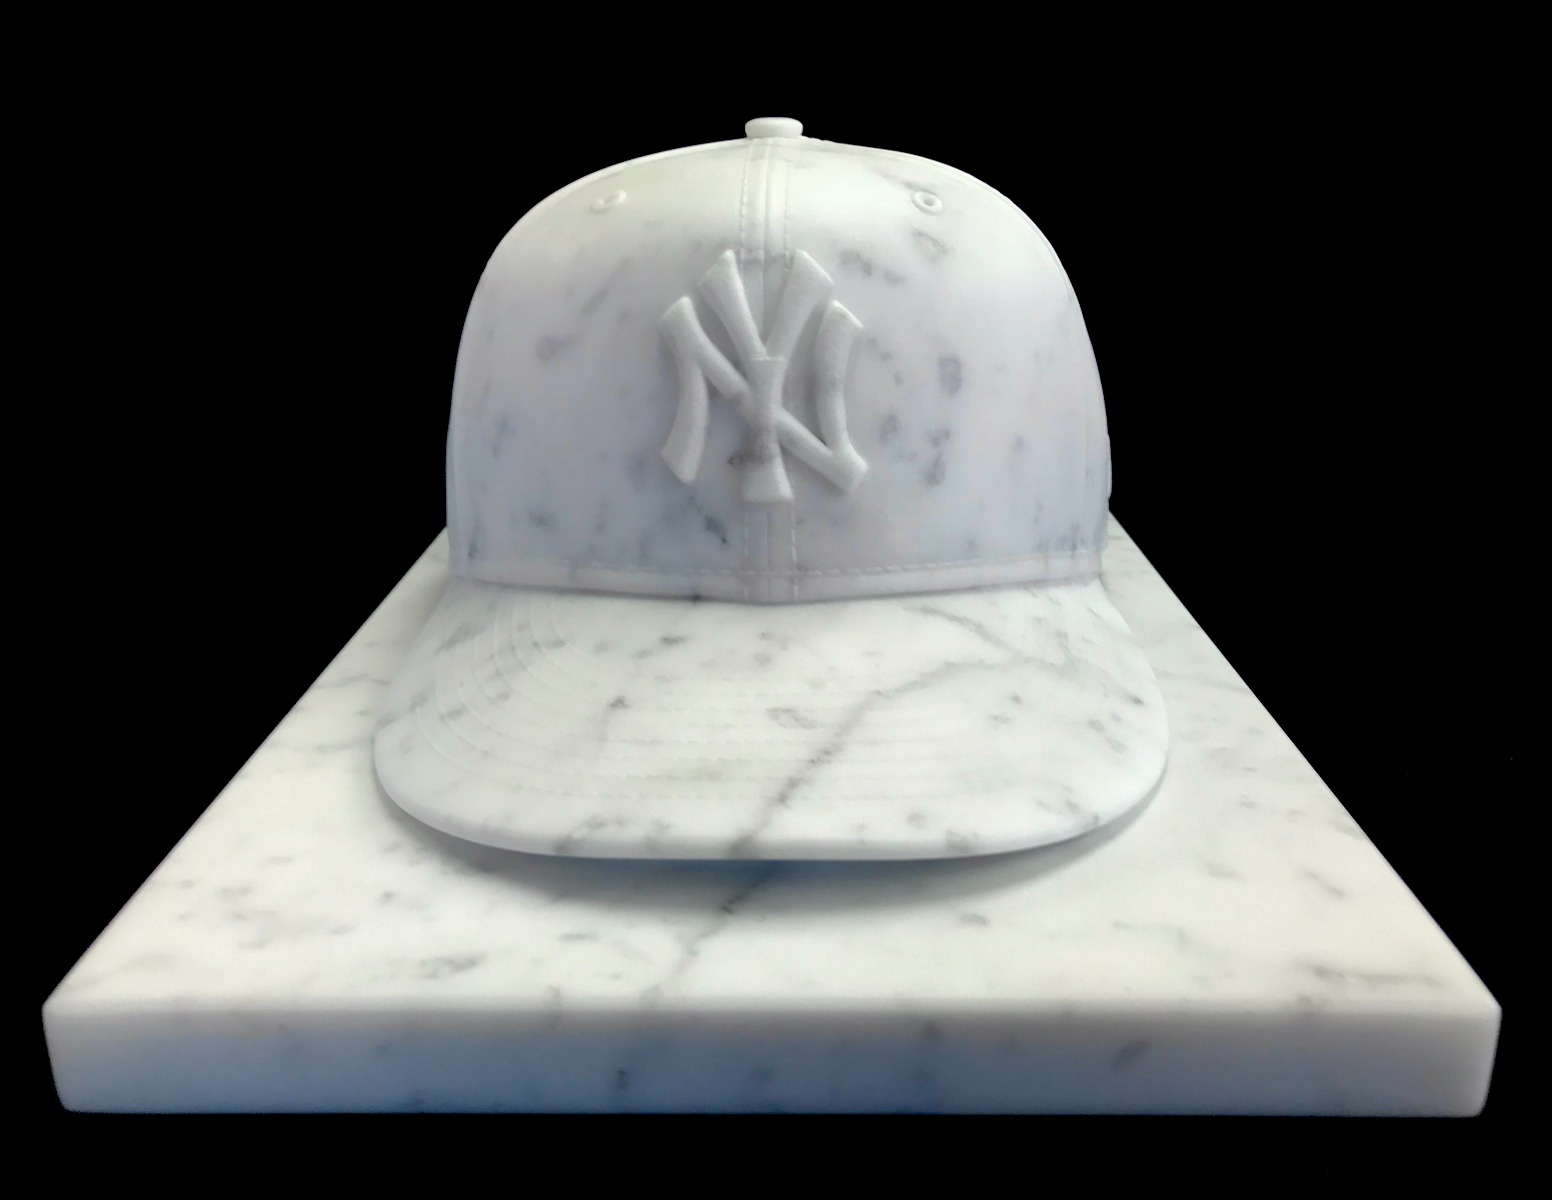 59Fifty NYY Baseball Cap